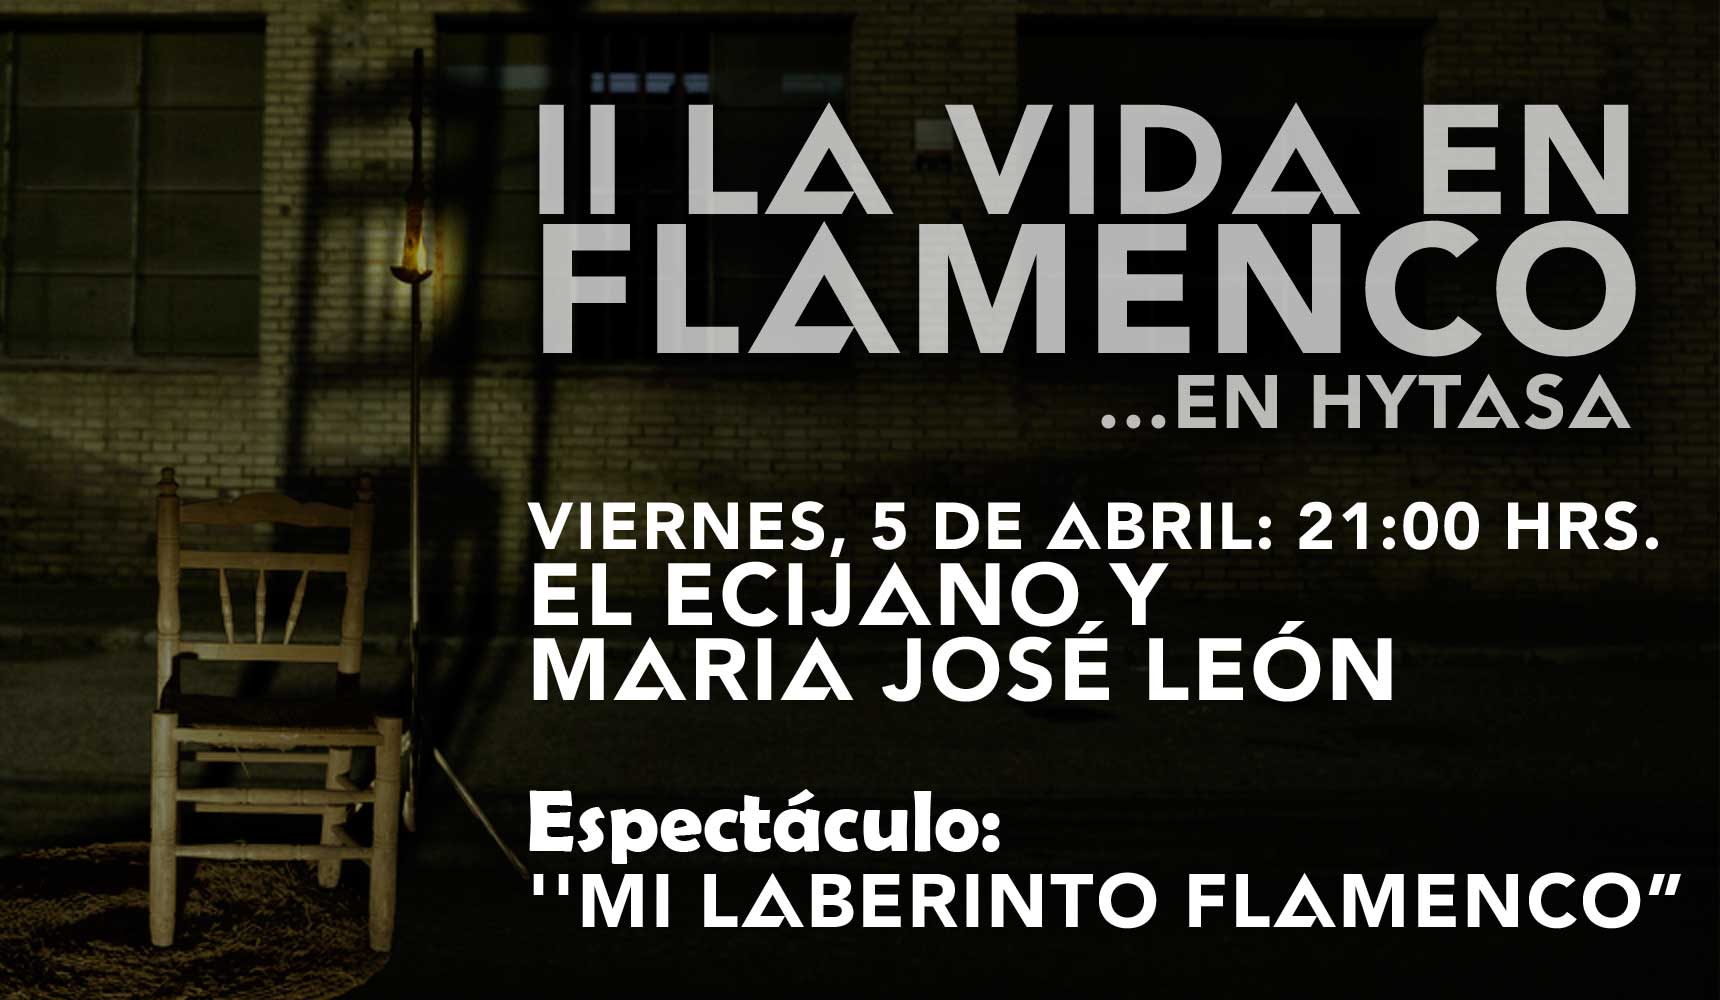 La Vida en Flamenco con El Ecijano y M José León